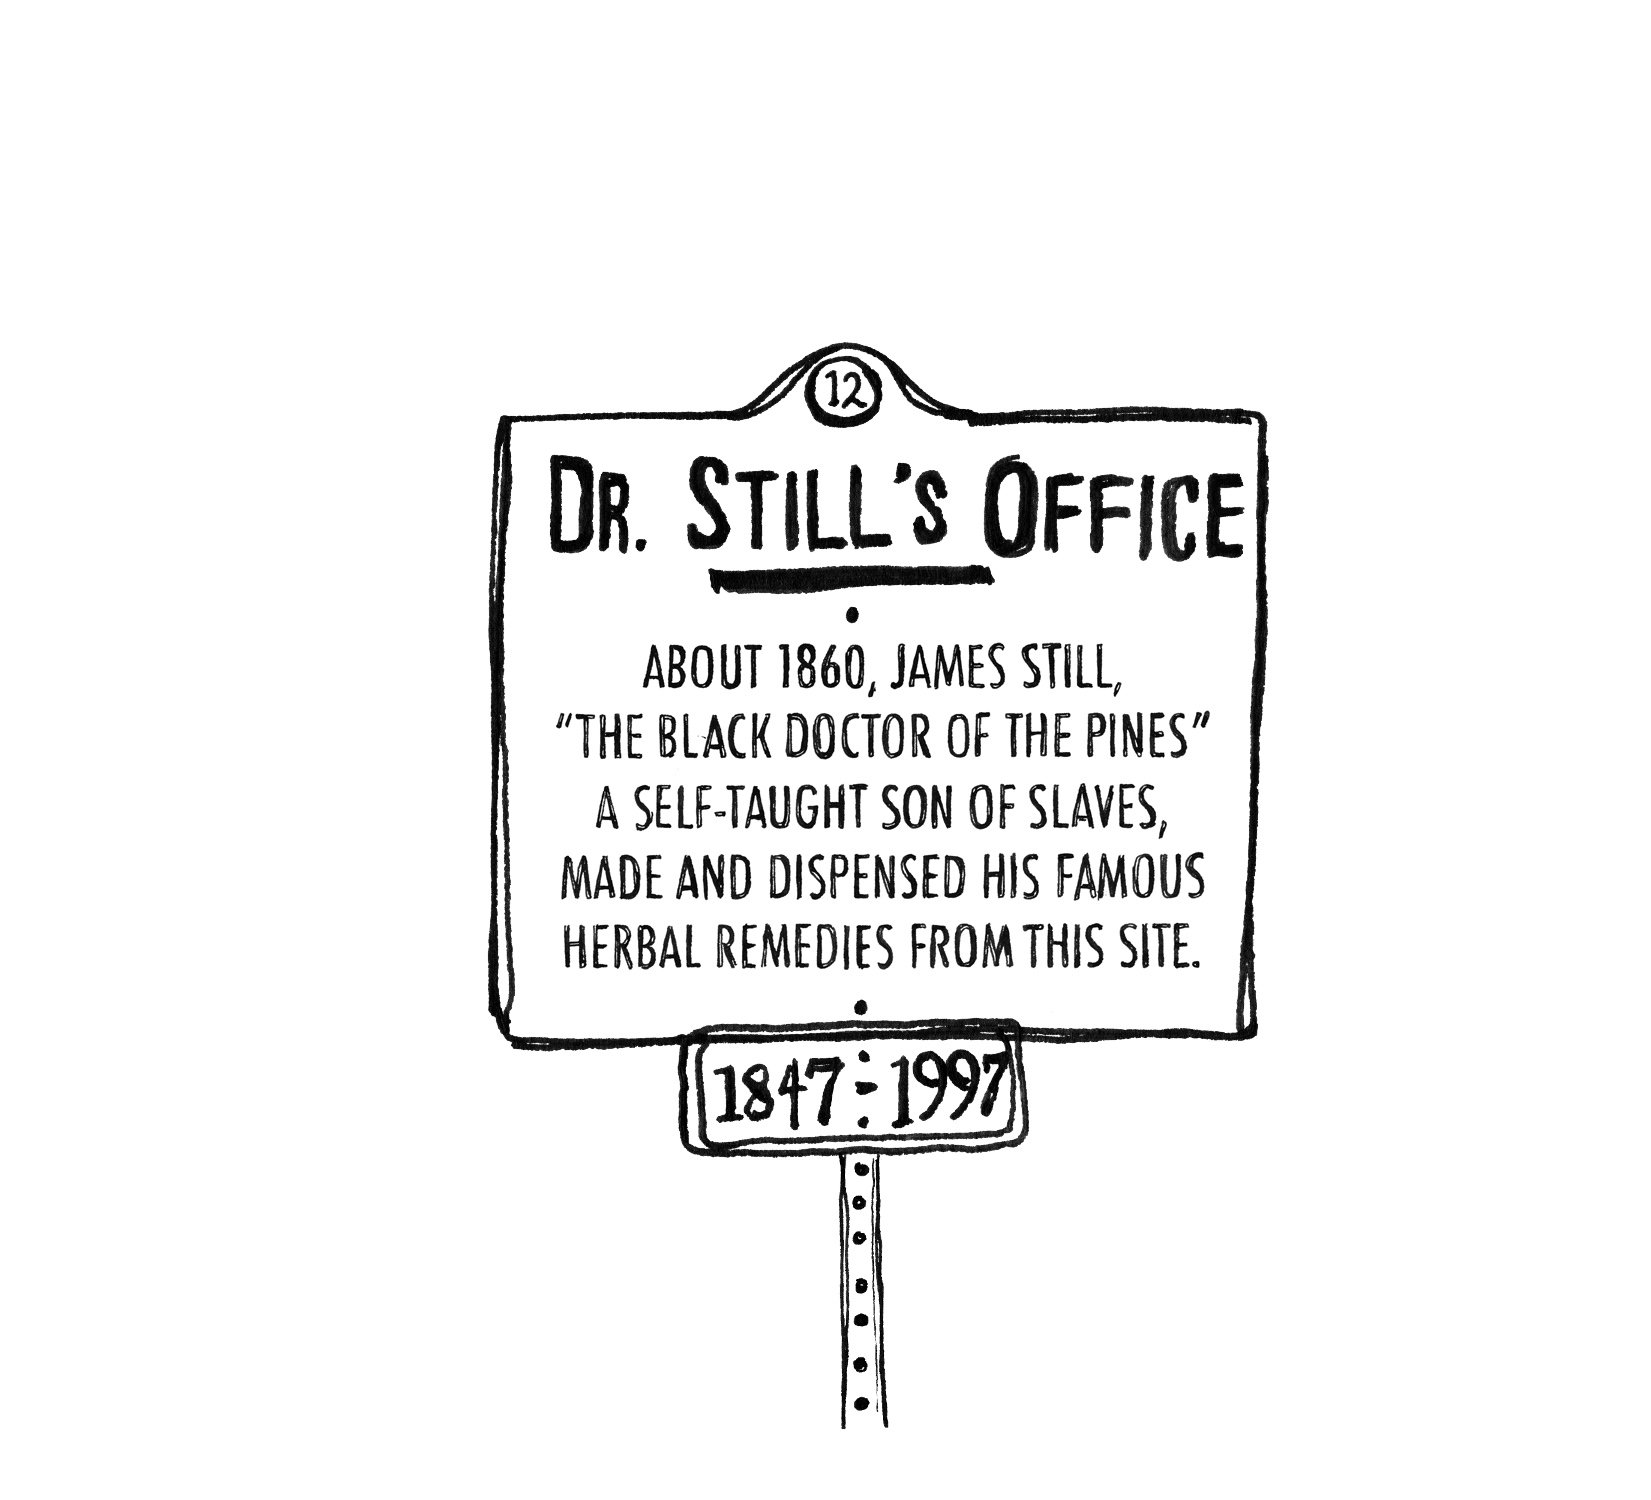 Dr. Still's Office